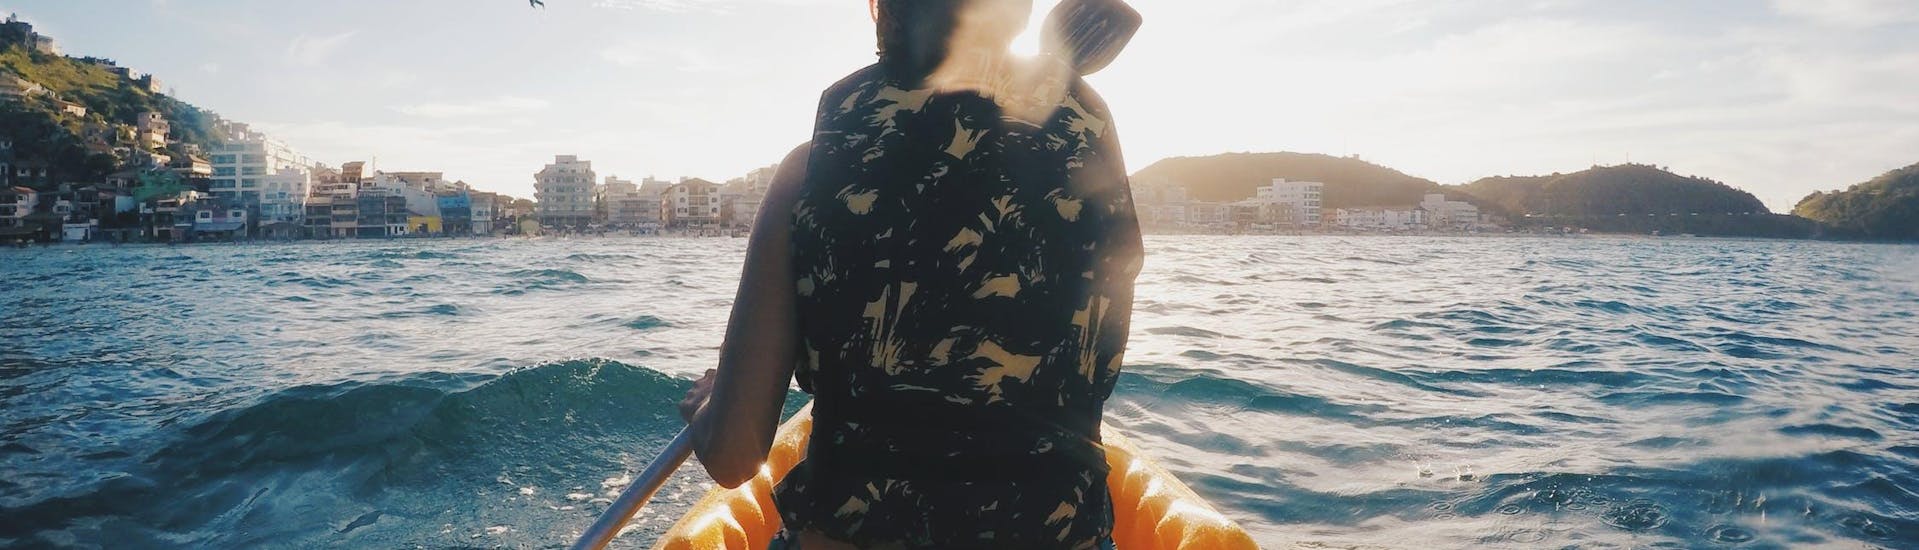 Paseo en catamarán en la bahía de Palma con puesta de sol.